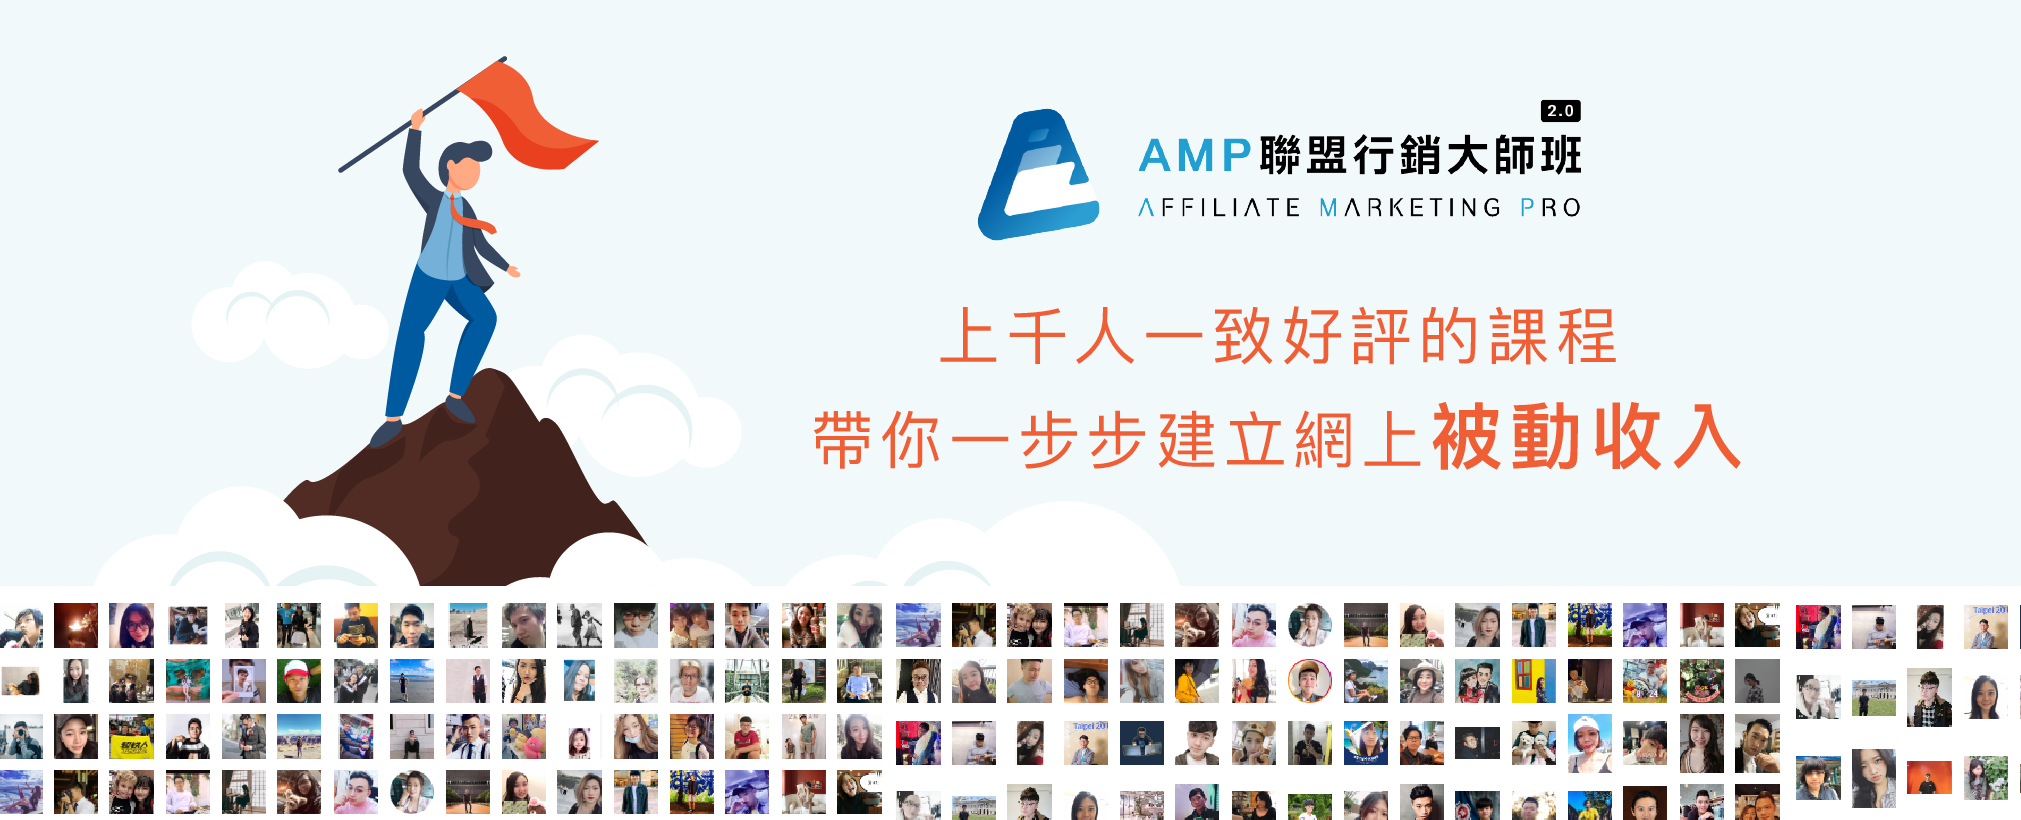 AMP聯盟行銷大師班